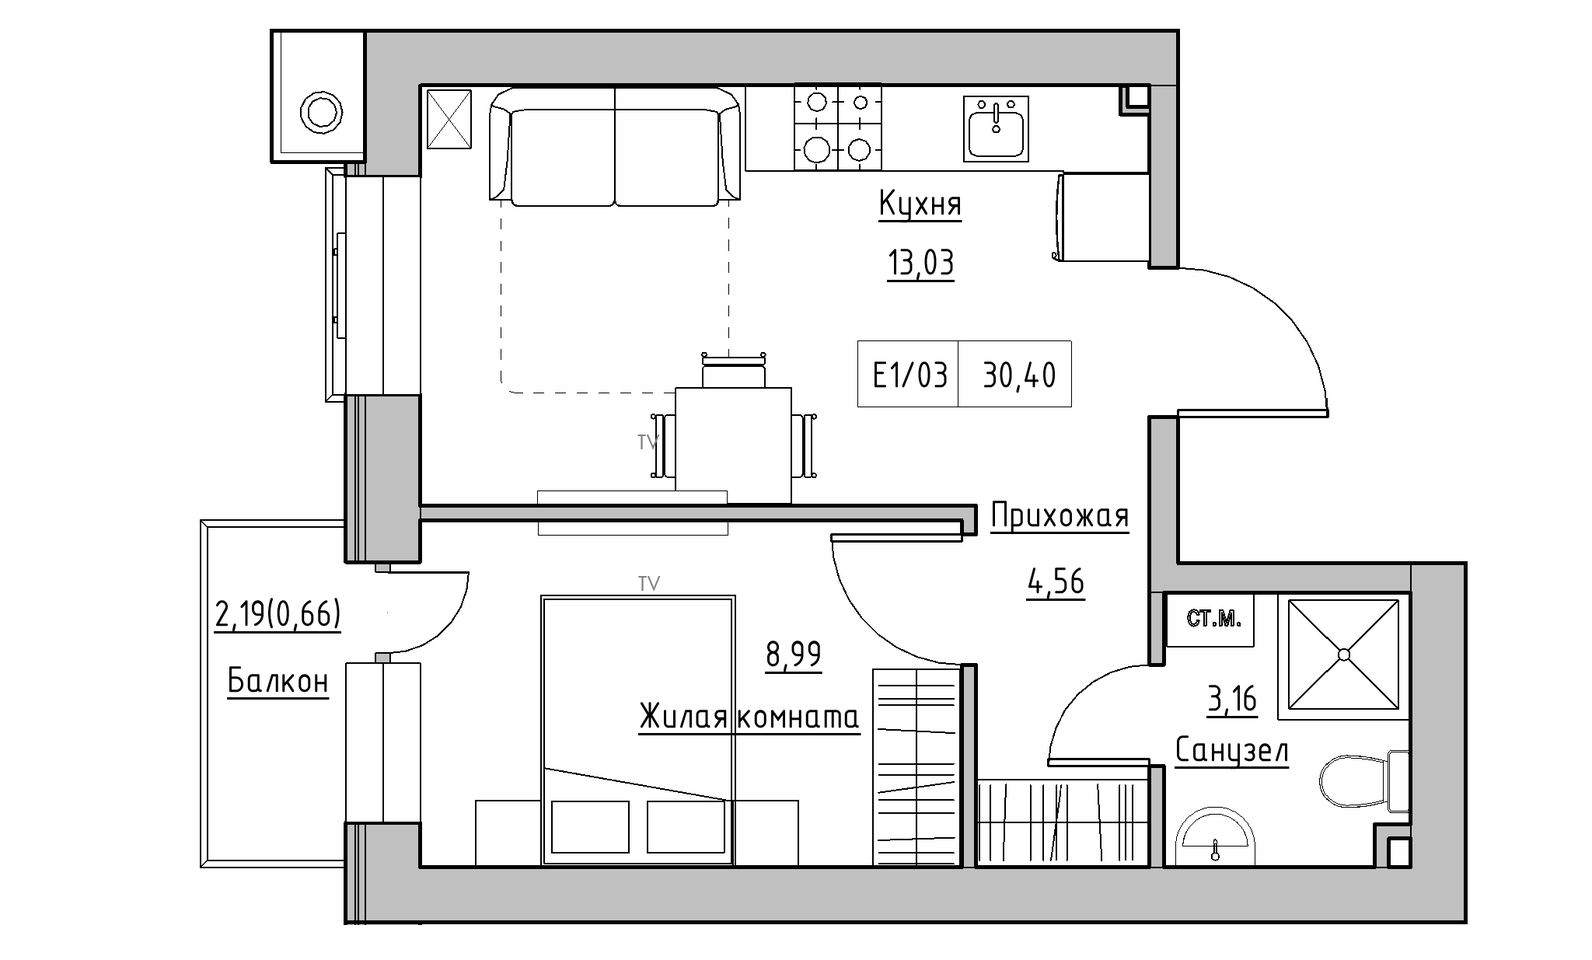 Планування 1-к квартира площею 30.4м2, KS-014-03/0012.